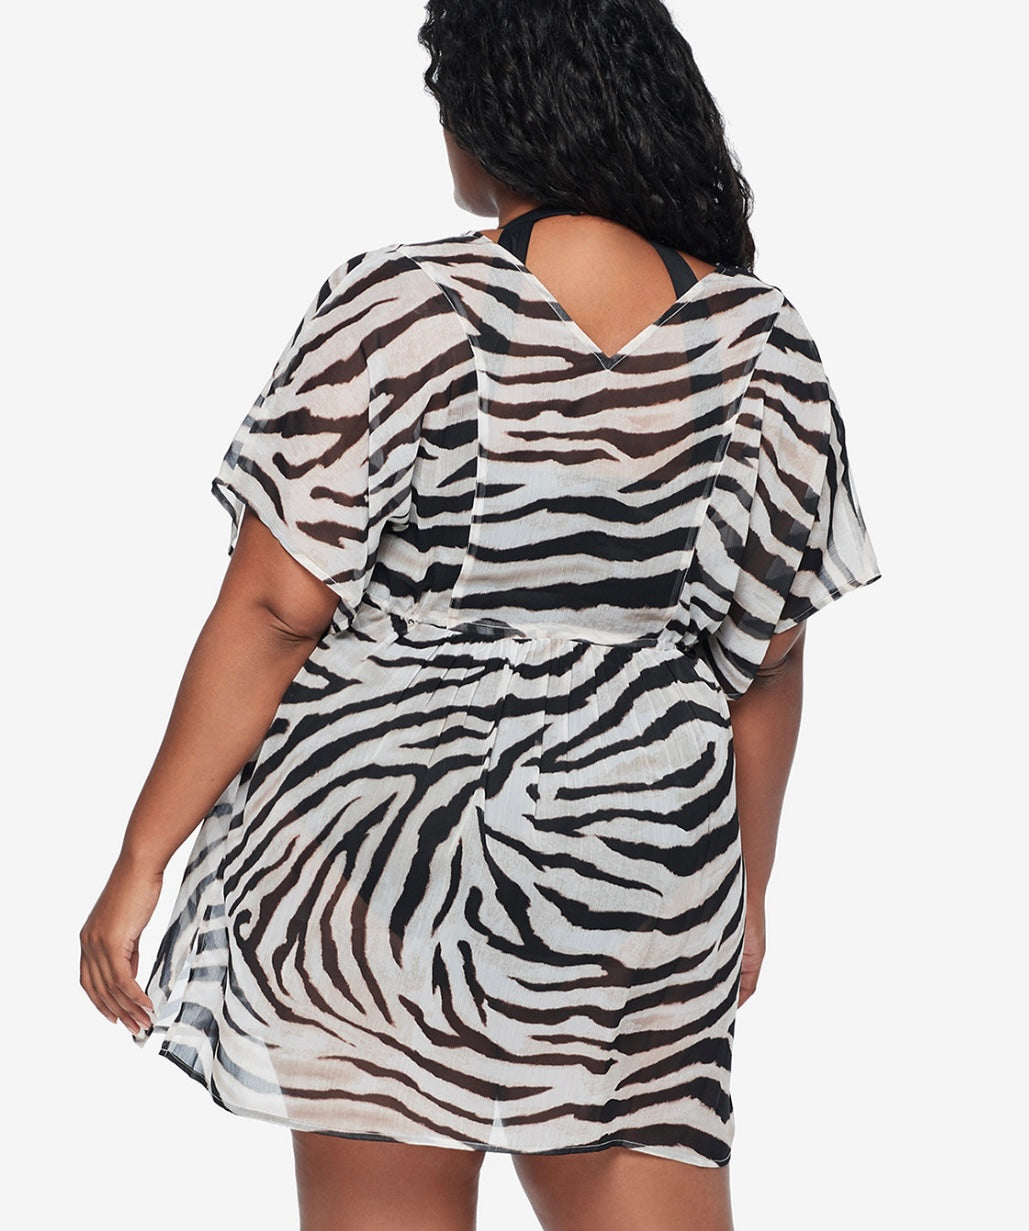 Lauren Ralph Lauren Women's Crinkle Rayon Cover Up Dress Zebra Plus Size 1X